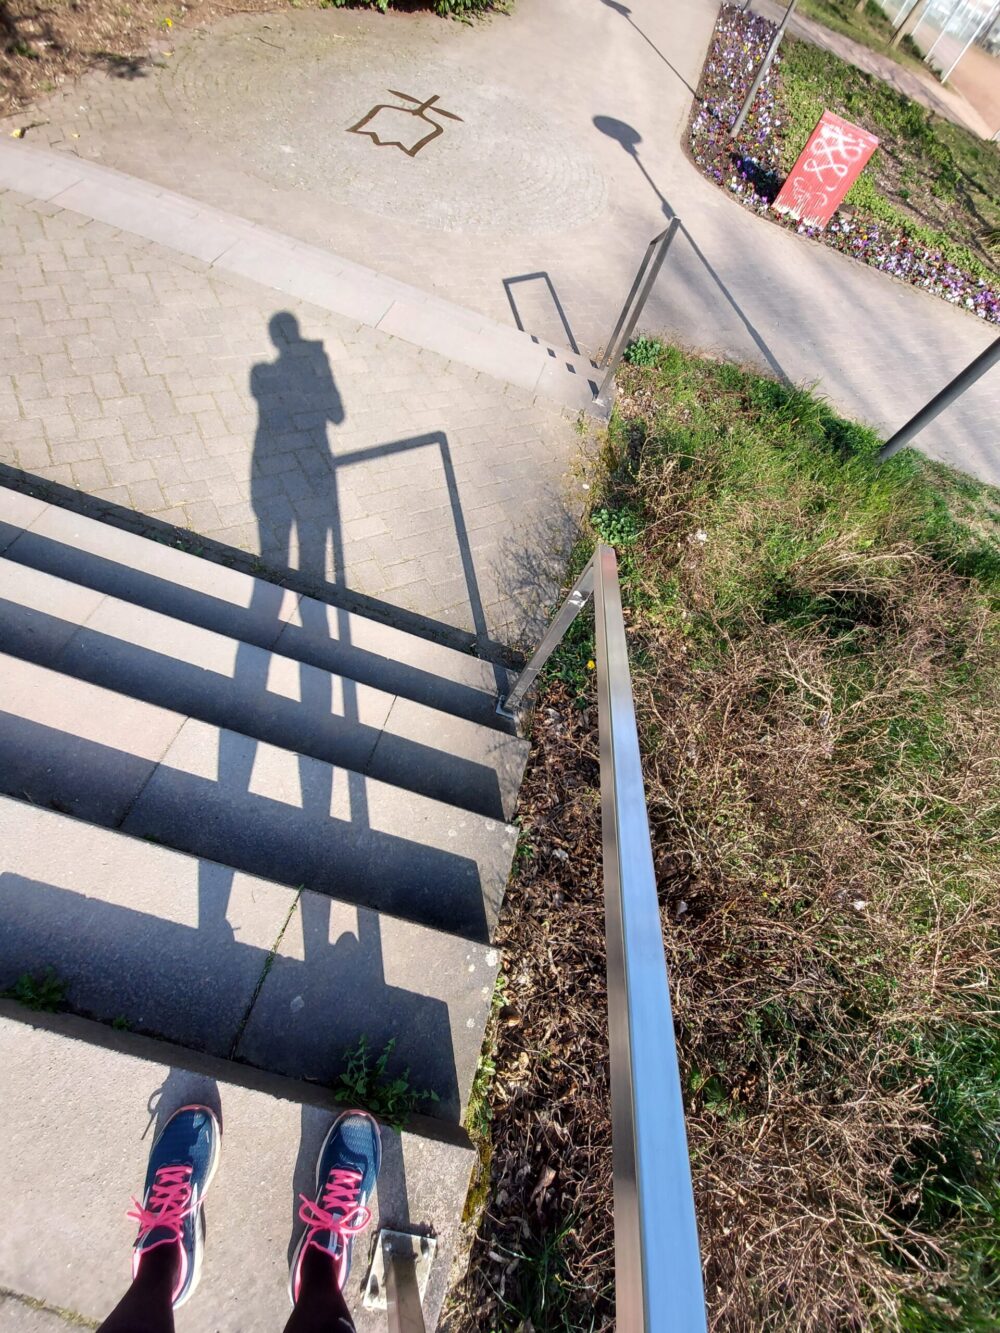 Beispiel-Foto zum Thema #Rahmen-Content im Stadtraum. Ein Geländer an einem Treppenaufgang im Außenraum wirf einen Schatten in die Sonne. Die fotografierende Person ist als Schatten zu sehen und ihre Laufschuhe mit pinkfarbenen Schnürsenkeln.